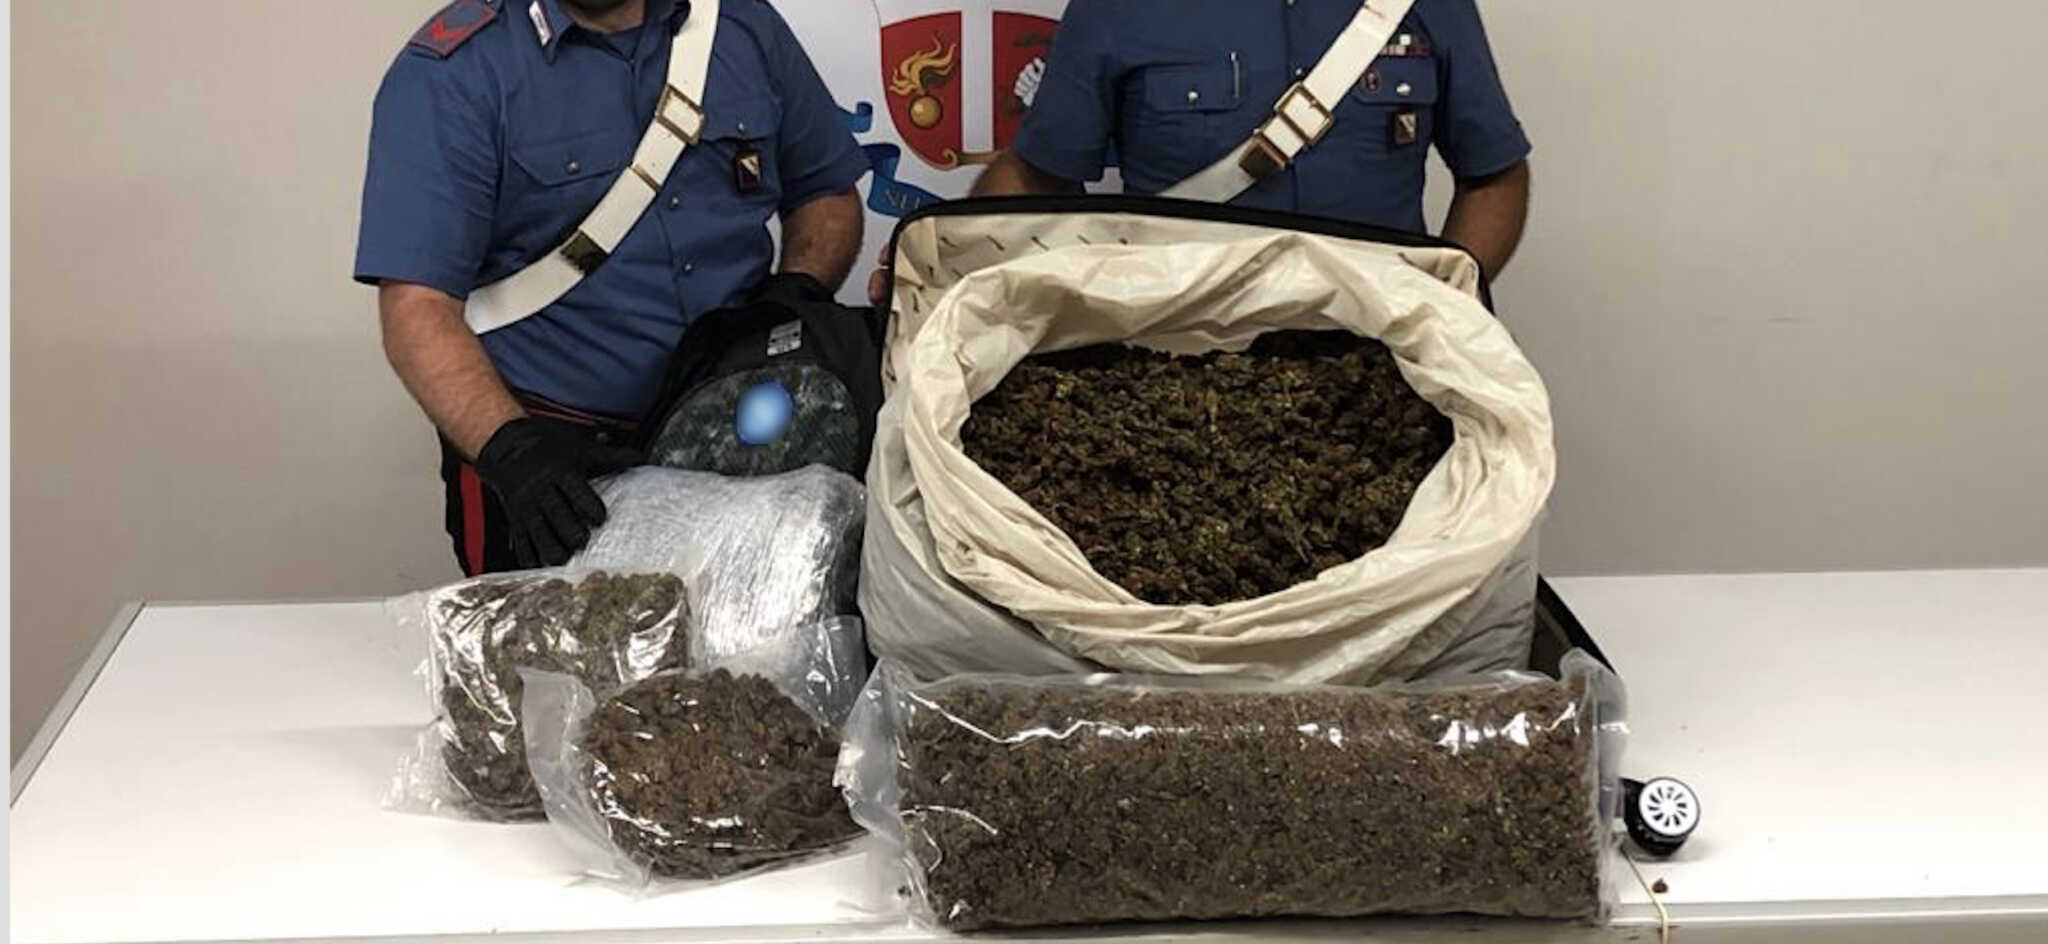 Napoli, aveva quasi 15 chili di marijuana nei bagagli: 30enne arrestato in Piazza Garibaldi